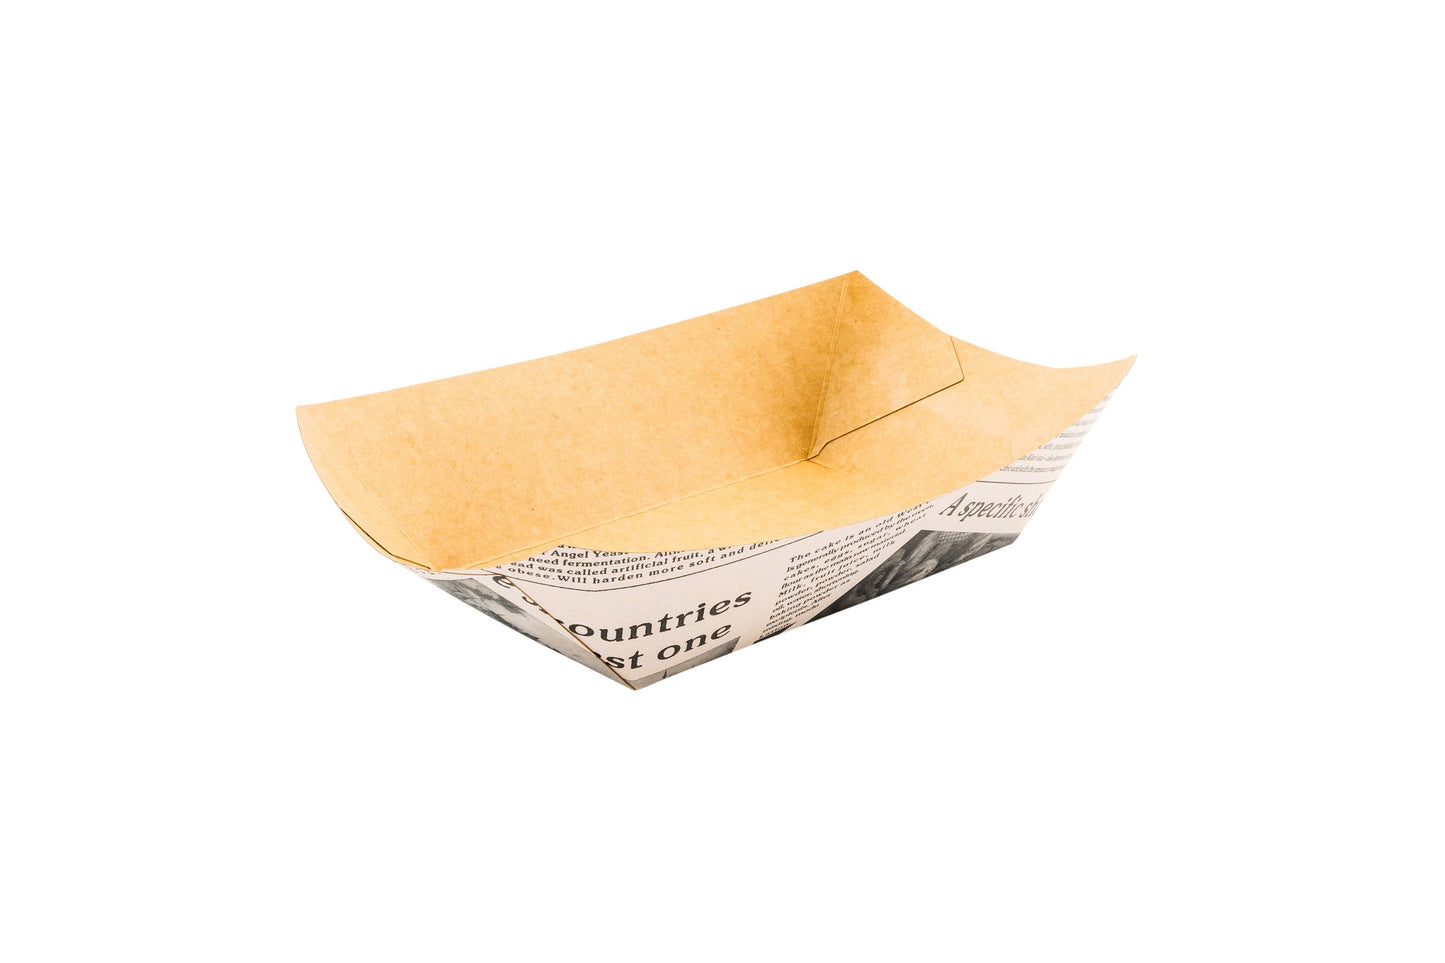 Bio Tek Newsprint Paper Boat - 5 1/2" x 3 1/2" x 2" - 200 count box